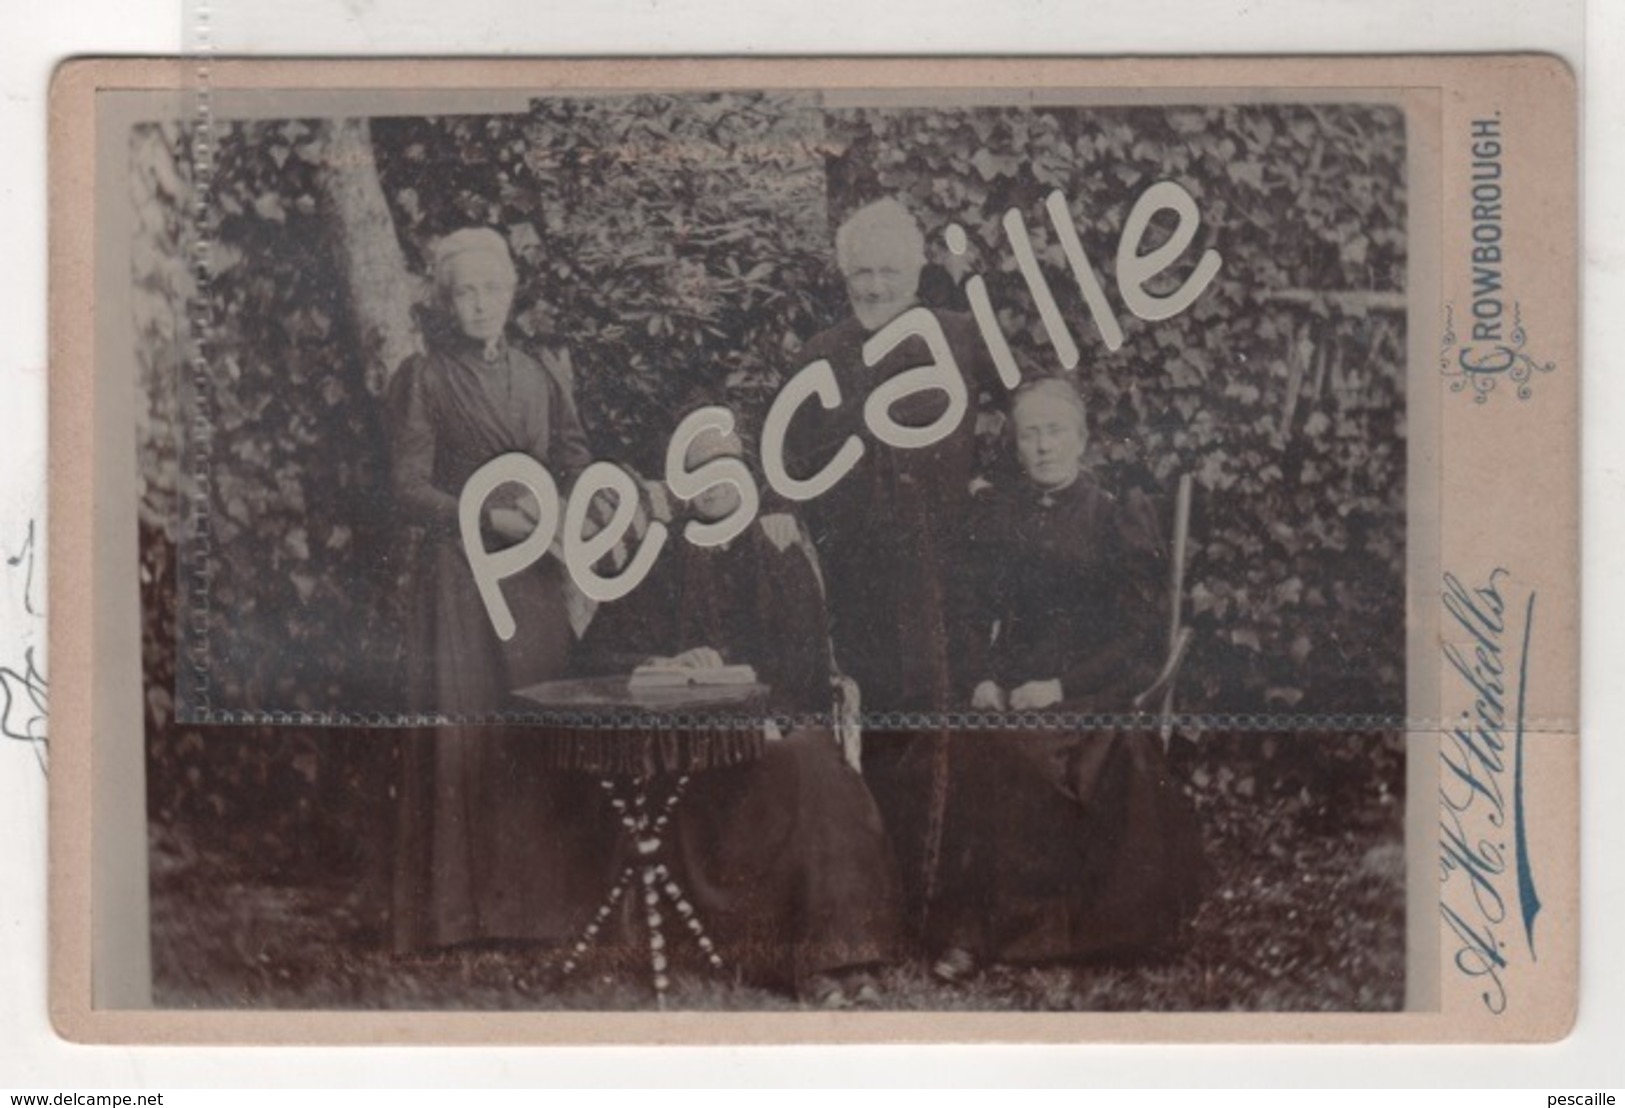 Wealden District Of East Sussex In The Weald- PHOTO ANIMEE UN HOMME TROIS FEMMES - A H.STICKELLS CROWBOROUGH - CARTONNEE - Alte (vor 1900)